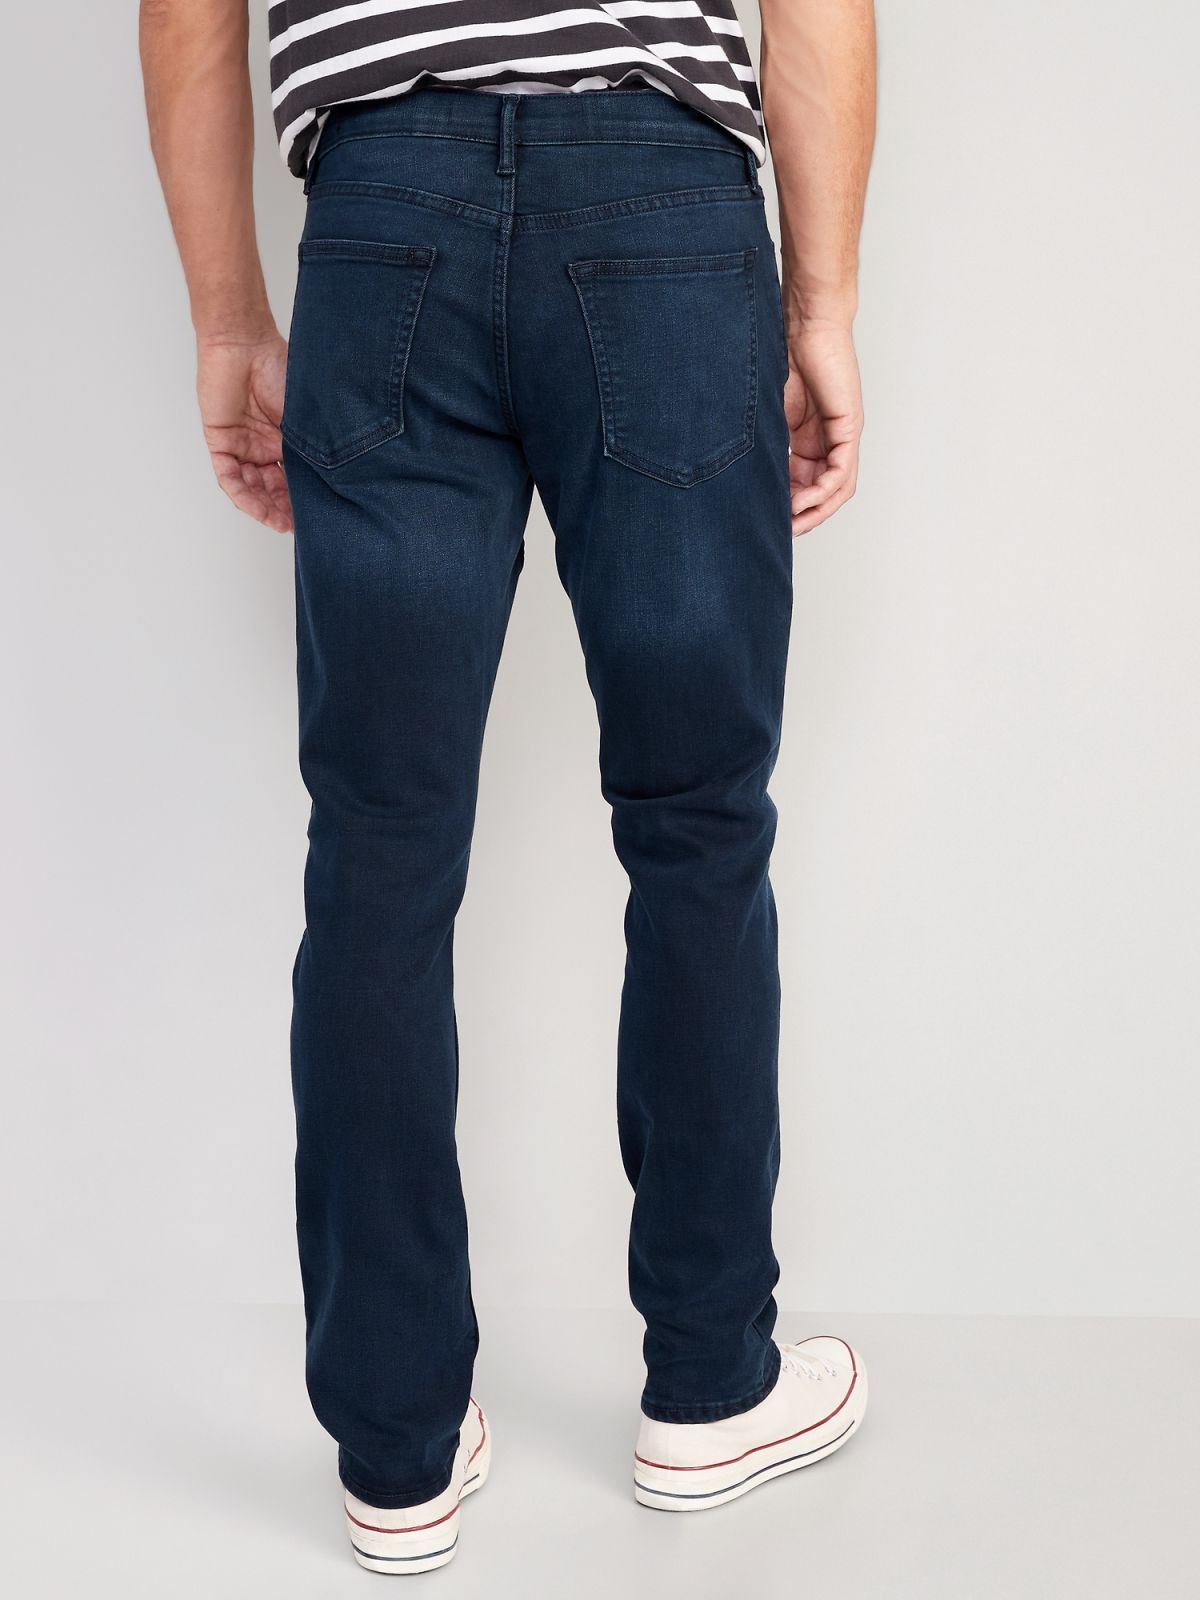  מכנסי ג'ינס / גברים של OLD NAVY